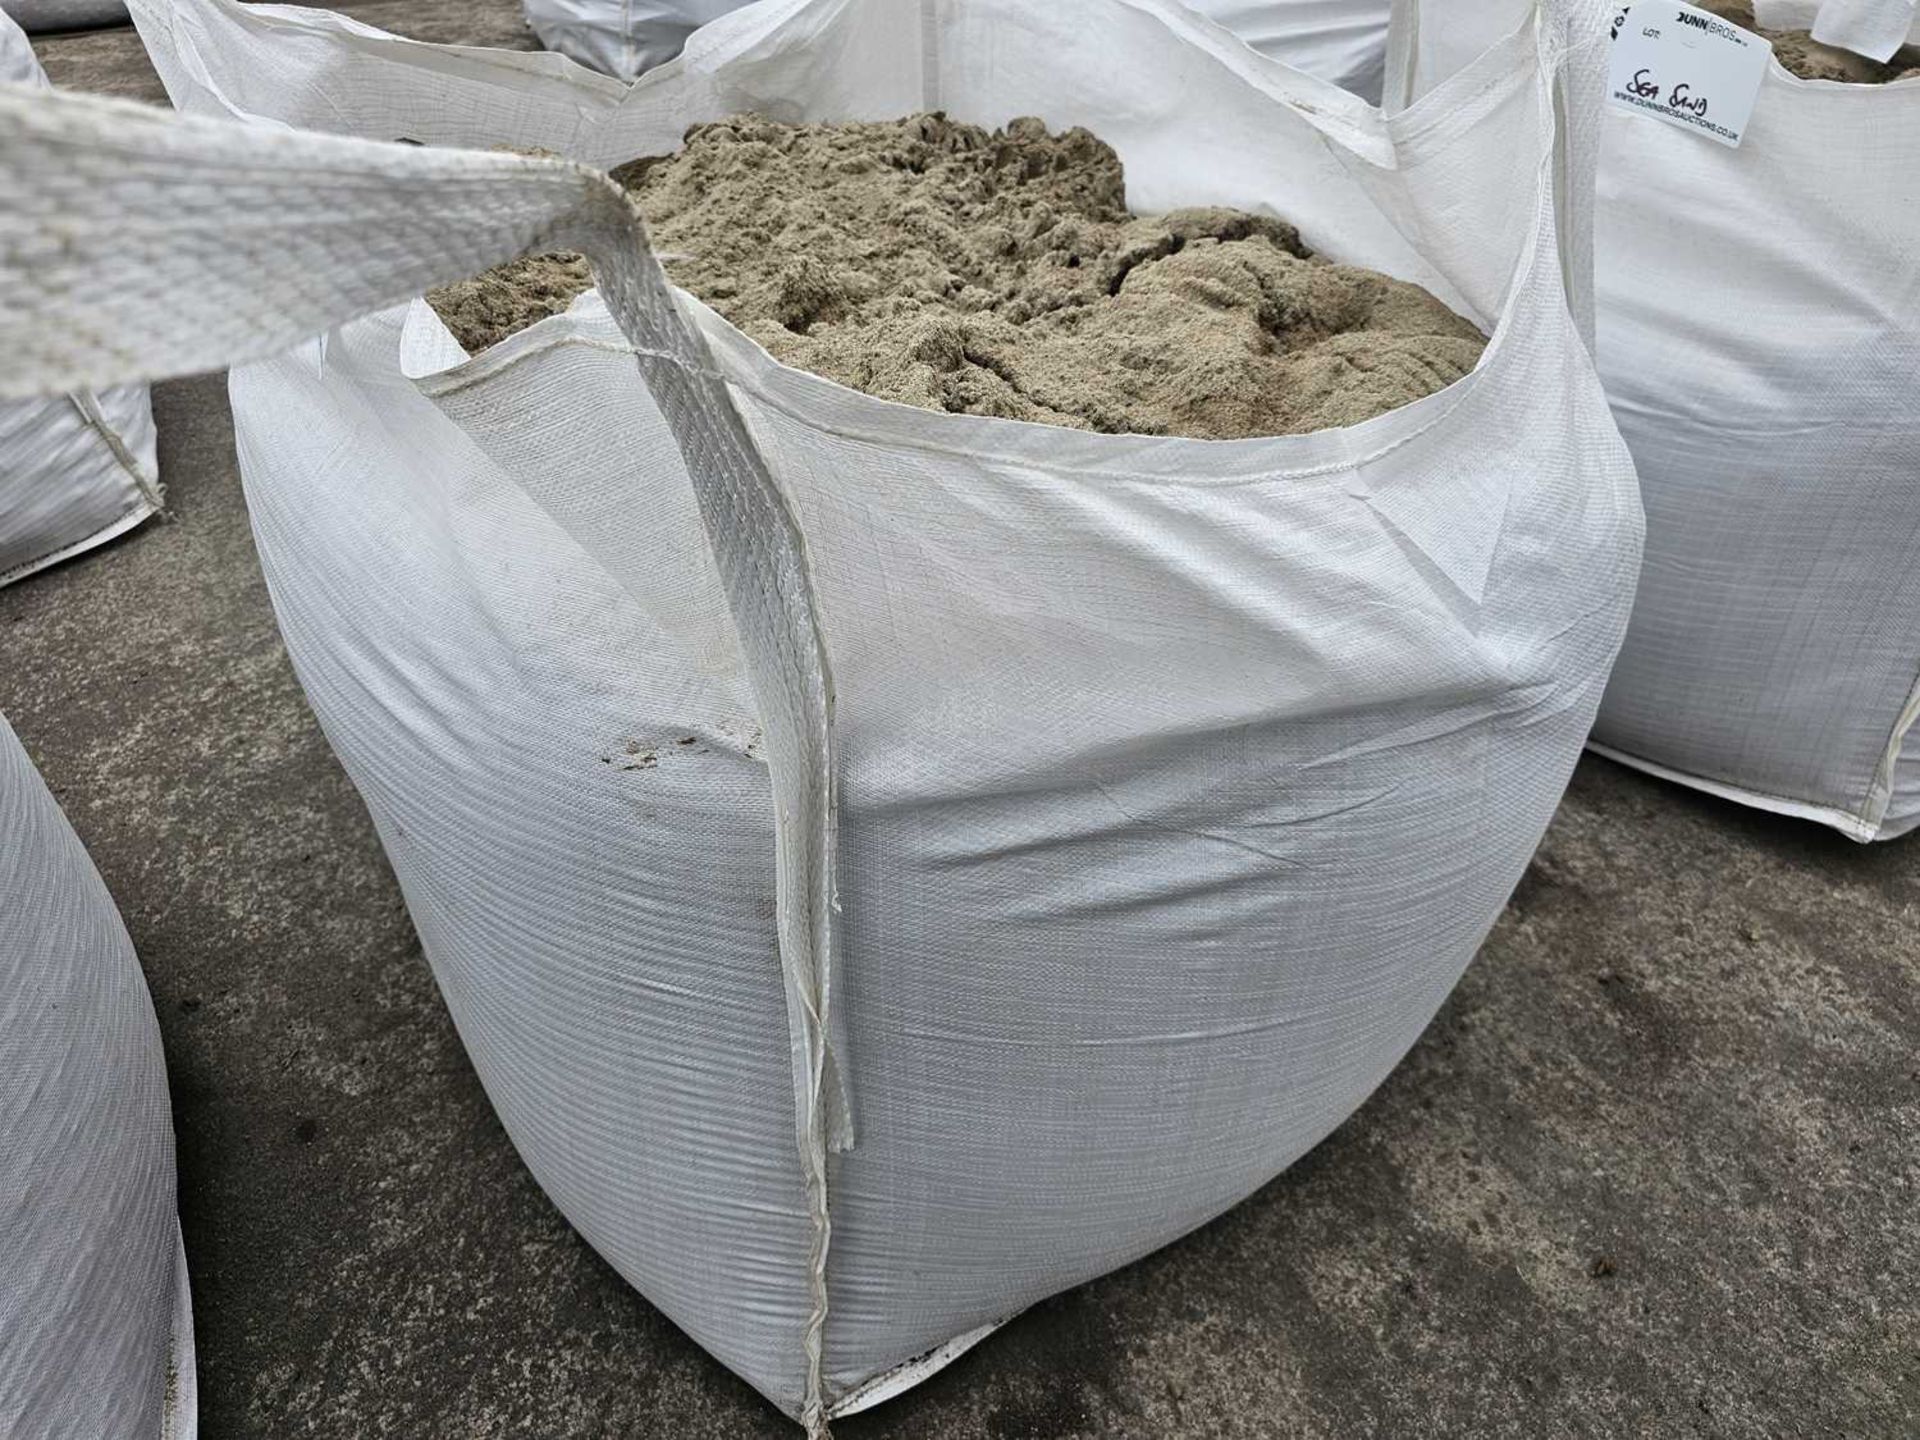 Bulk Bag of Sea Sand - Image 2 of 2